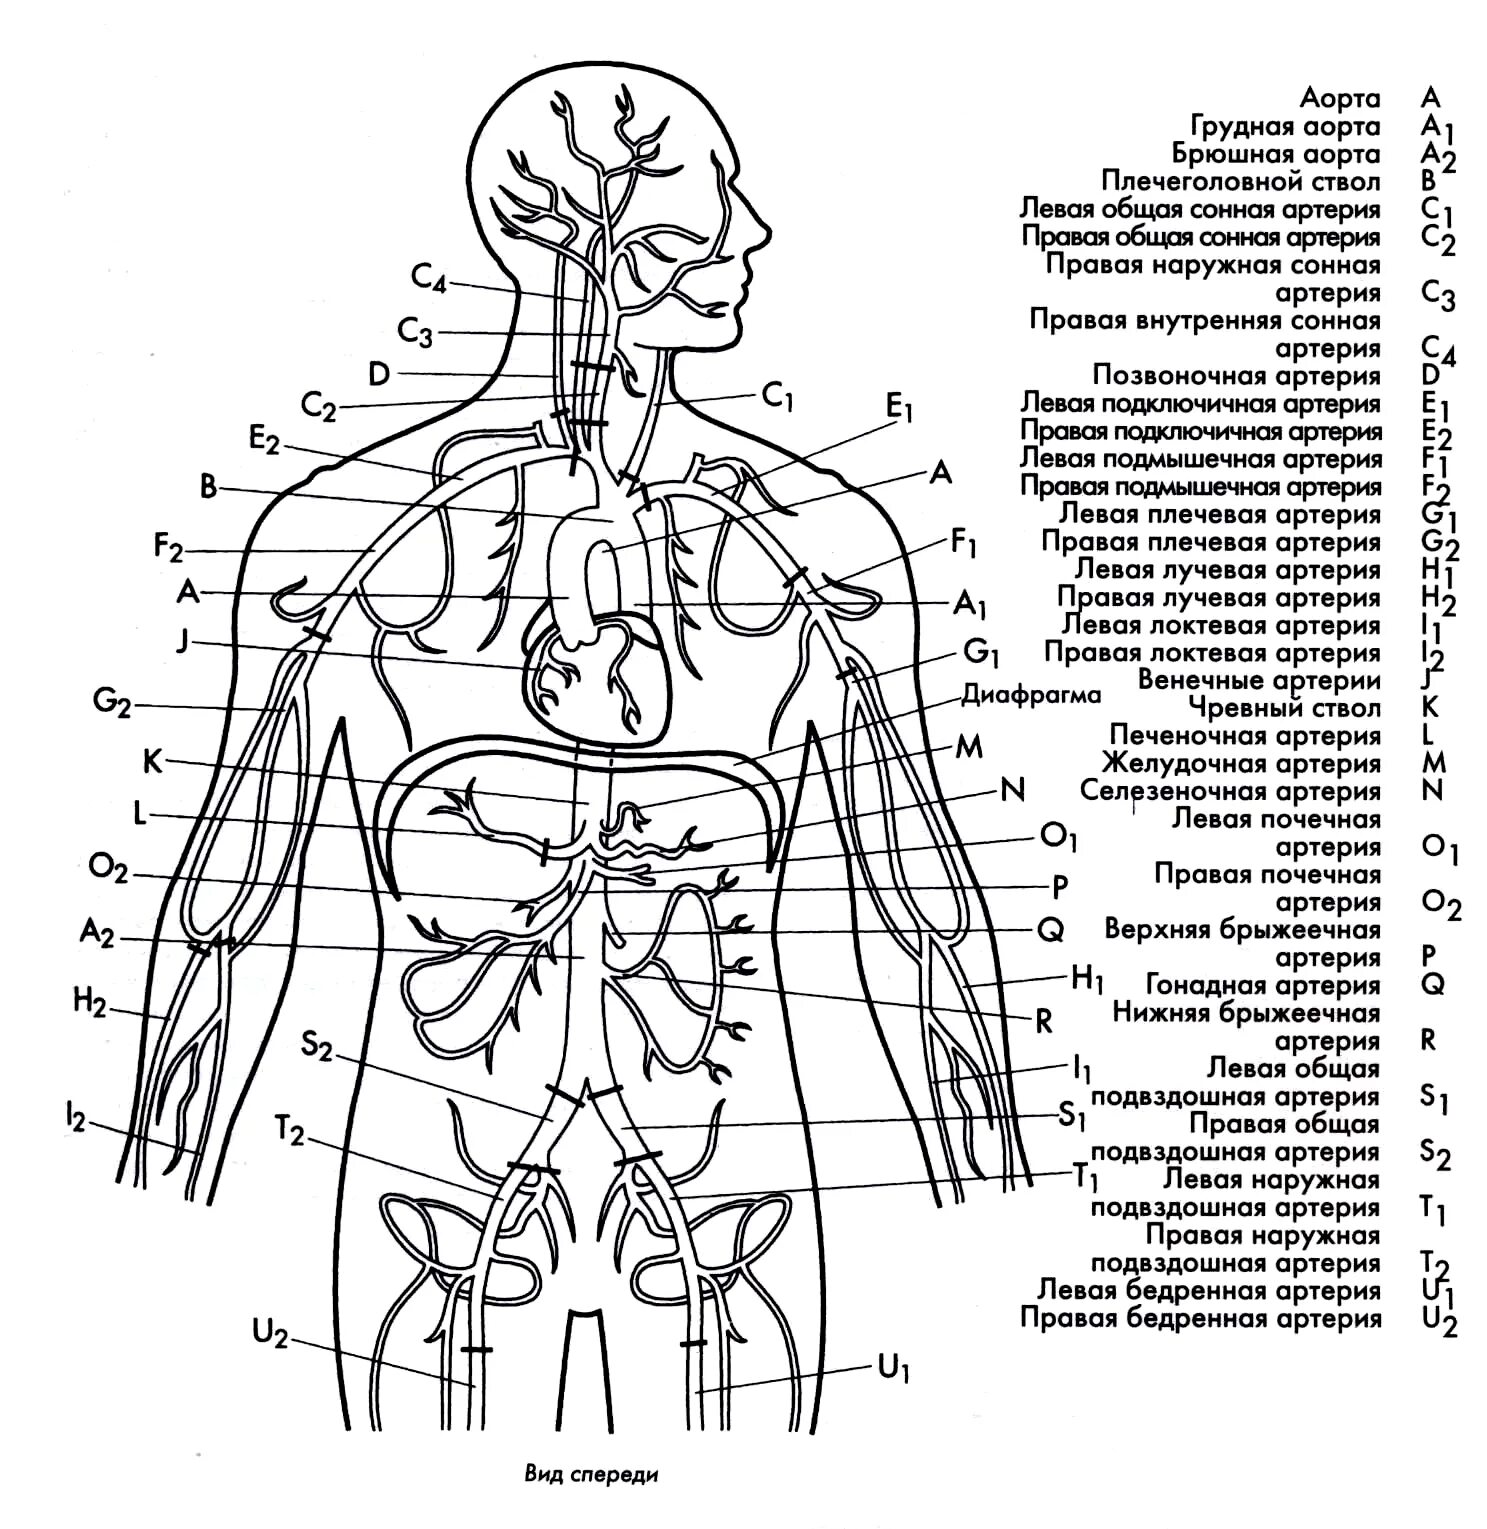 Венозная система человека анатомия схема расположения. Внутренние органы человека схема схема. Артериальная система схема артерий. Схема строения артериальной системы.